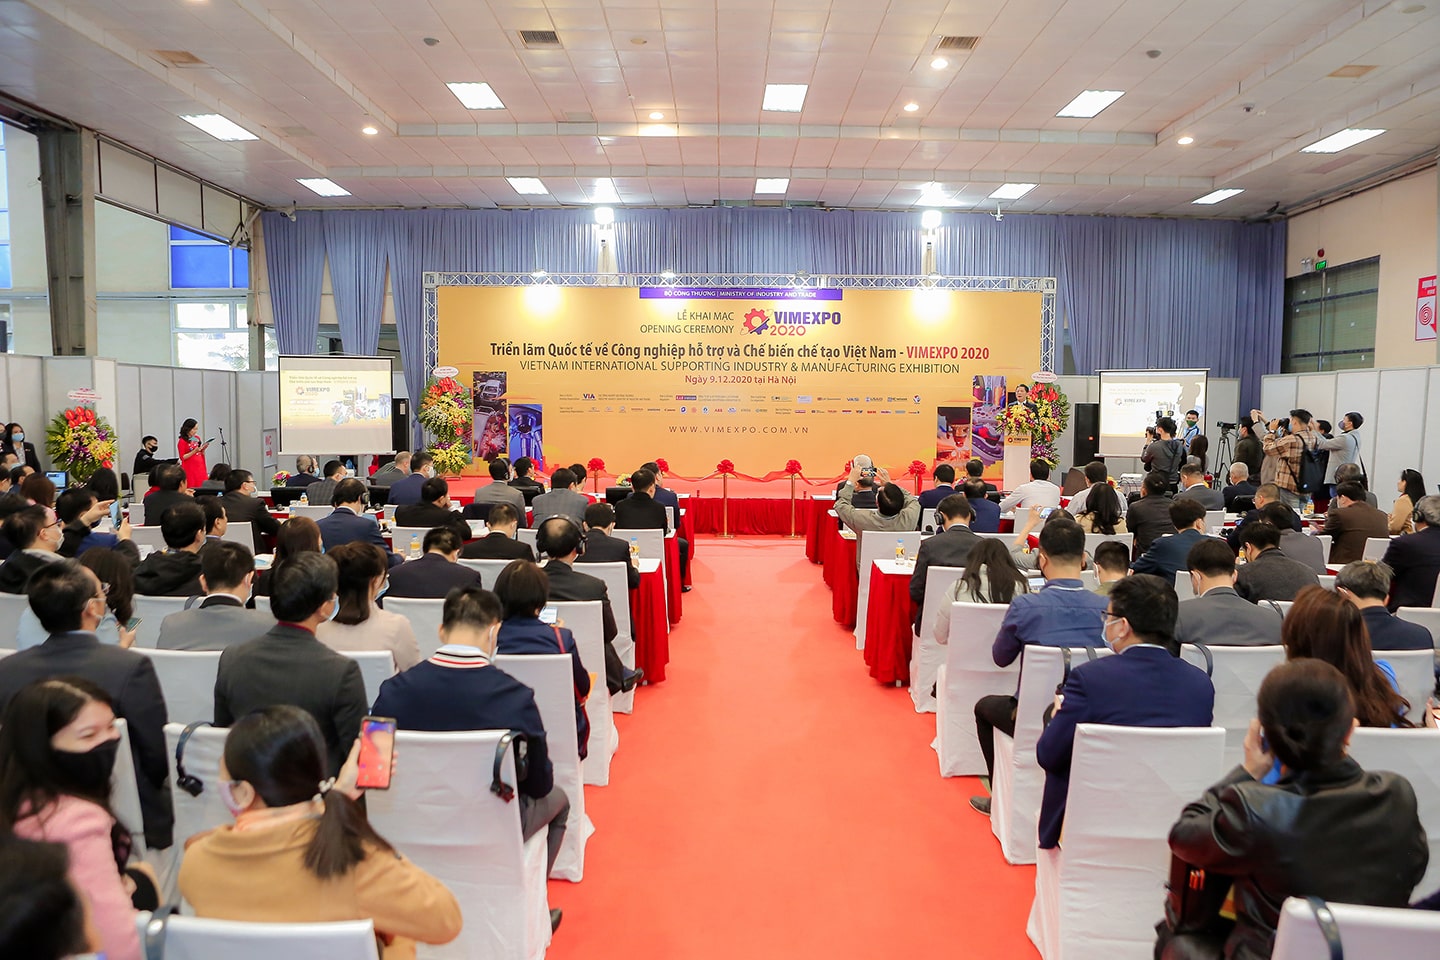 Lễ khai mạc Triển lãm quốc tế lần thứ 1 về công nghiệp hỗ trợ và chế biến chế tạo Việt Nam – VIMEXPO 2020